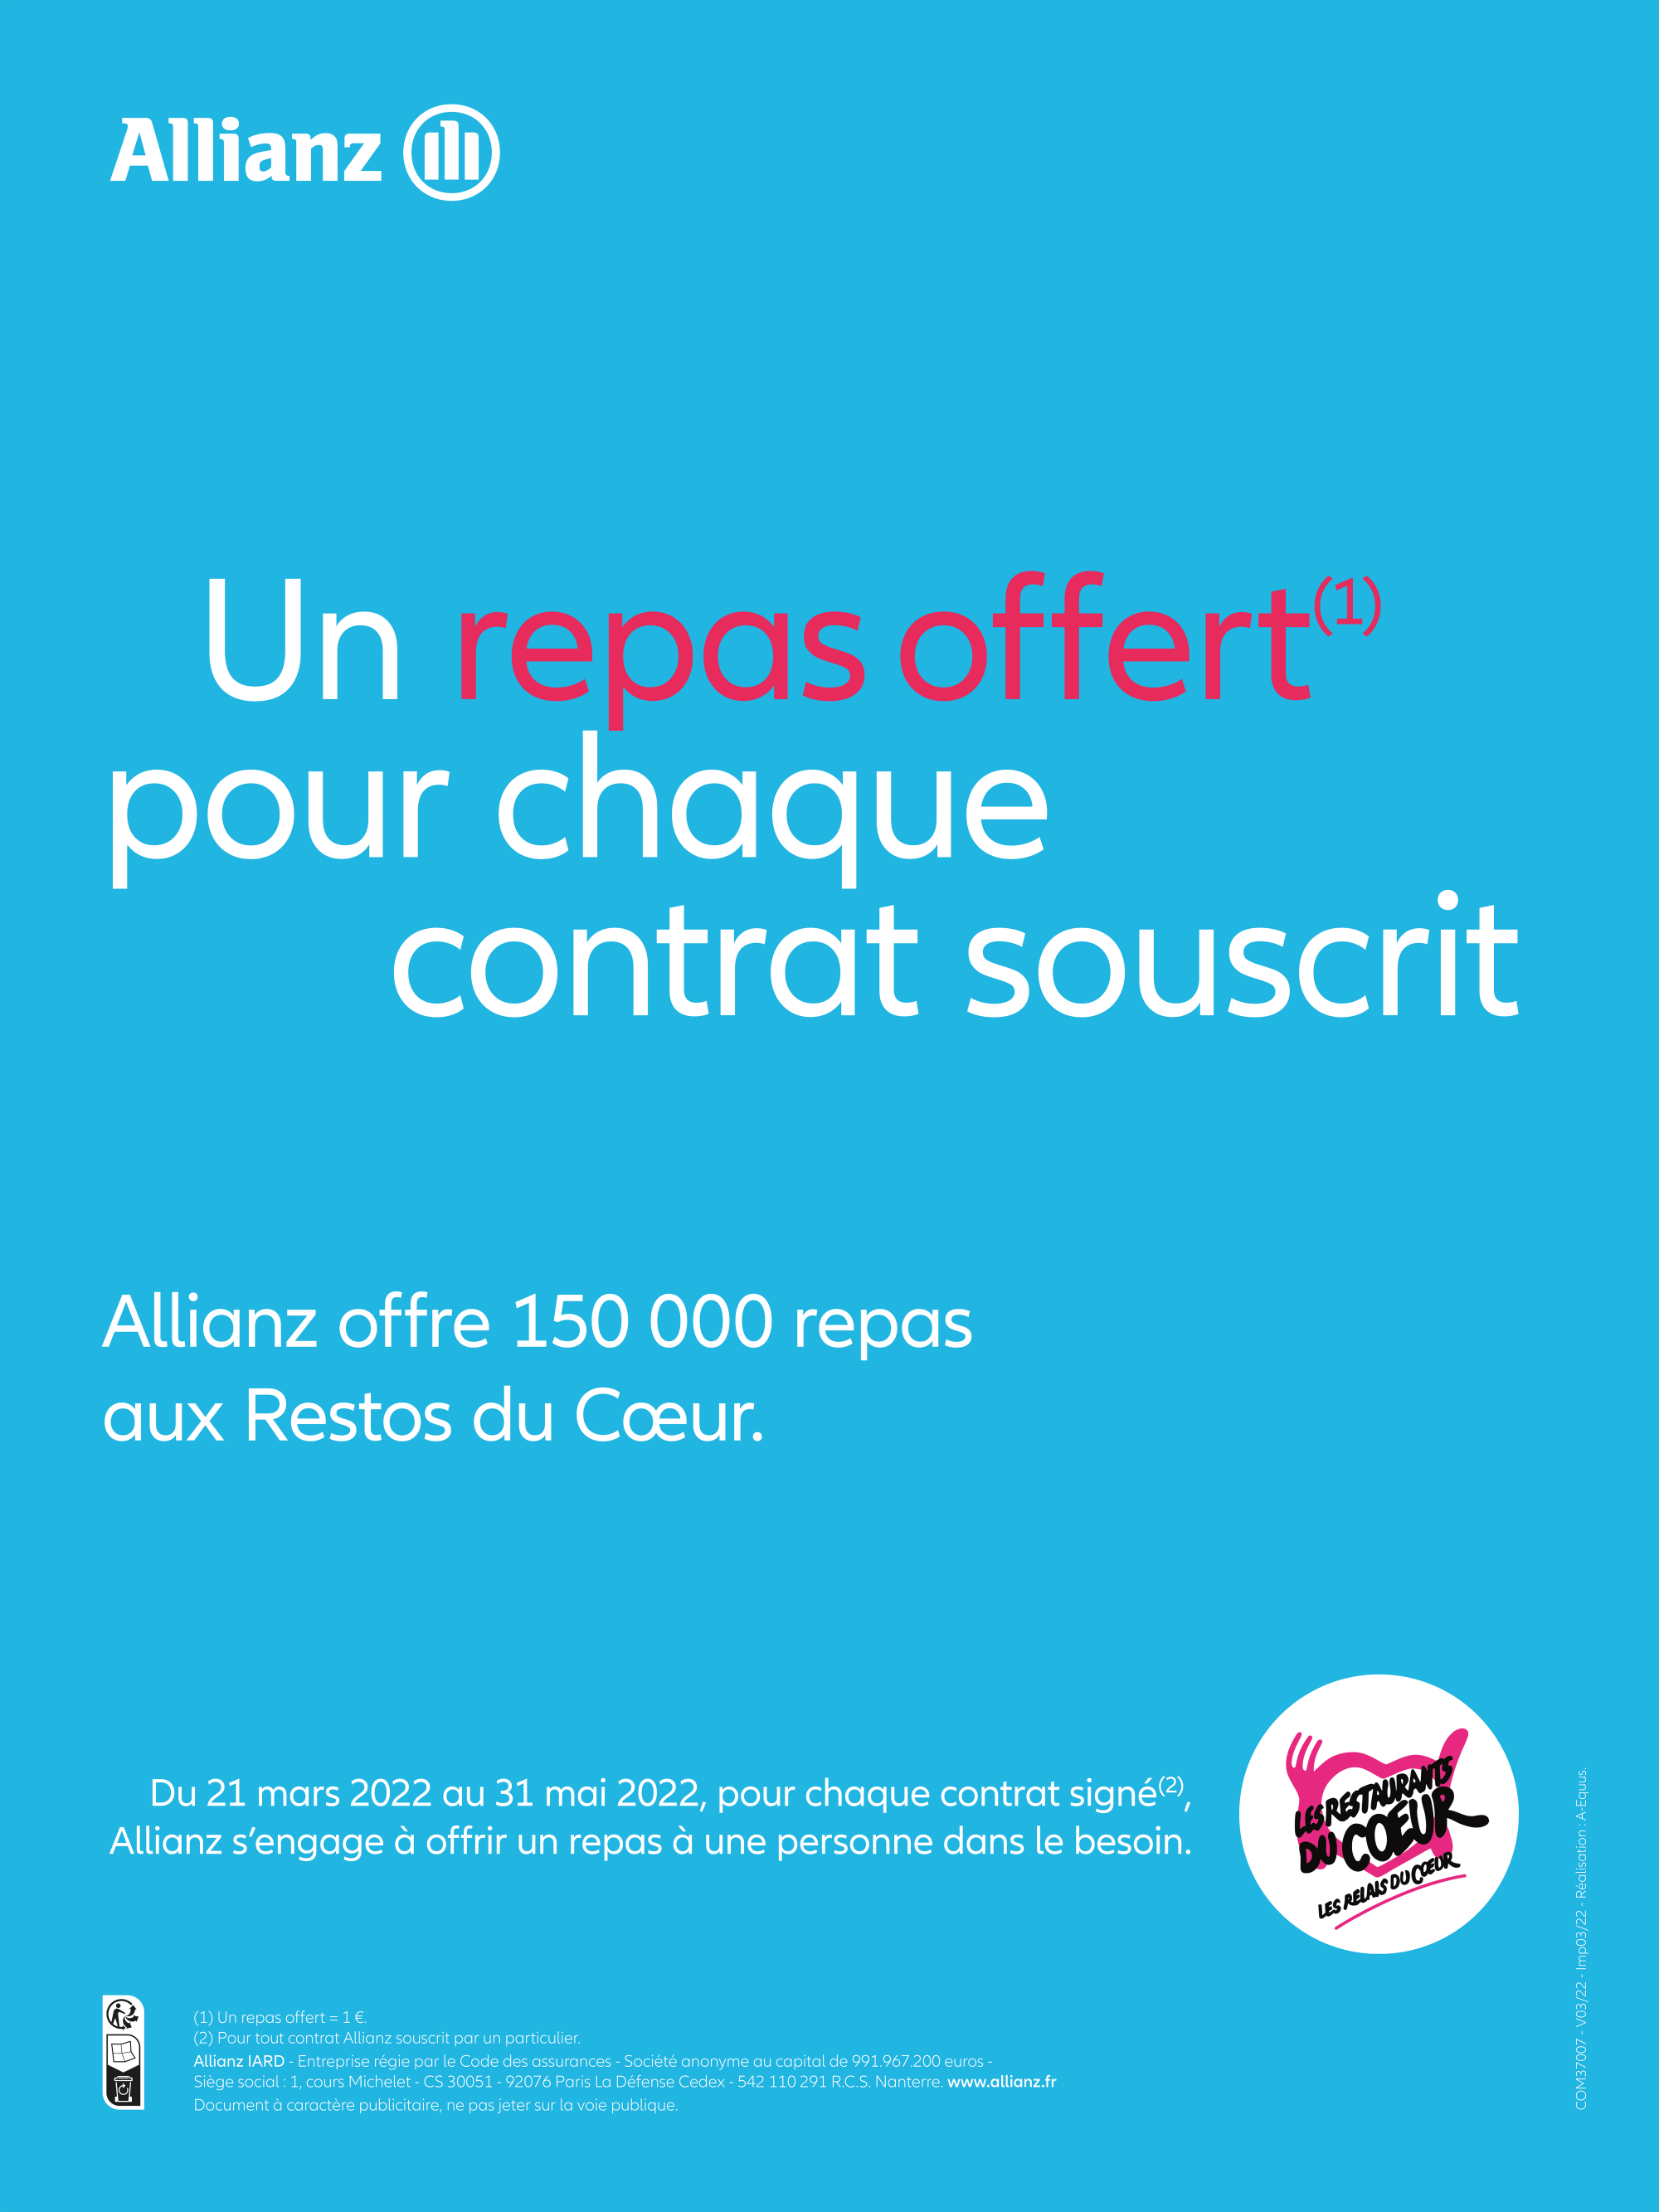 Allianz France poursuit son engagement aux côtés des Restos du Cœur, avec l’opération « Un repas offert pour chaque contrat souscrit »